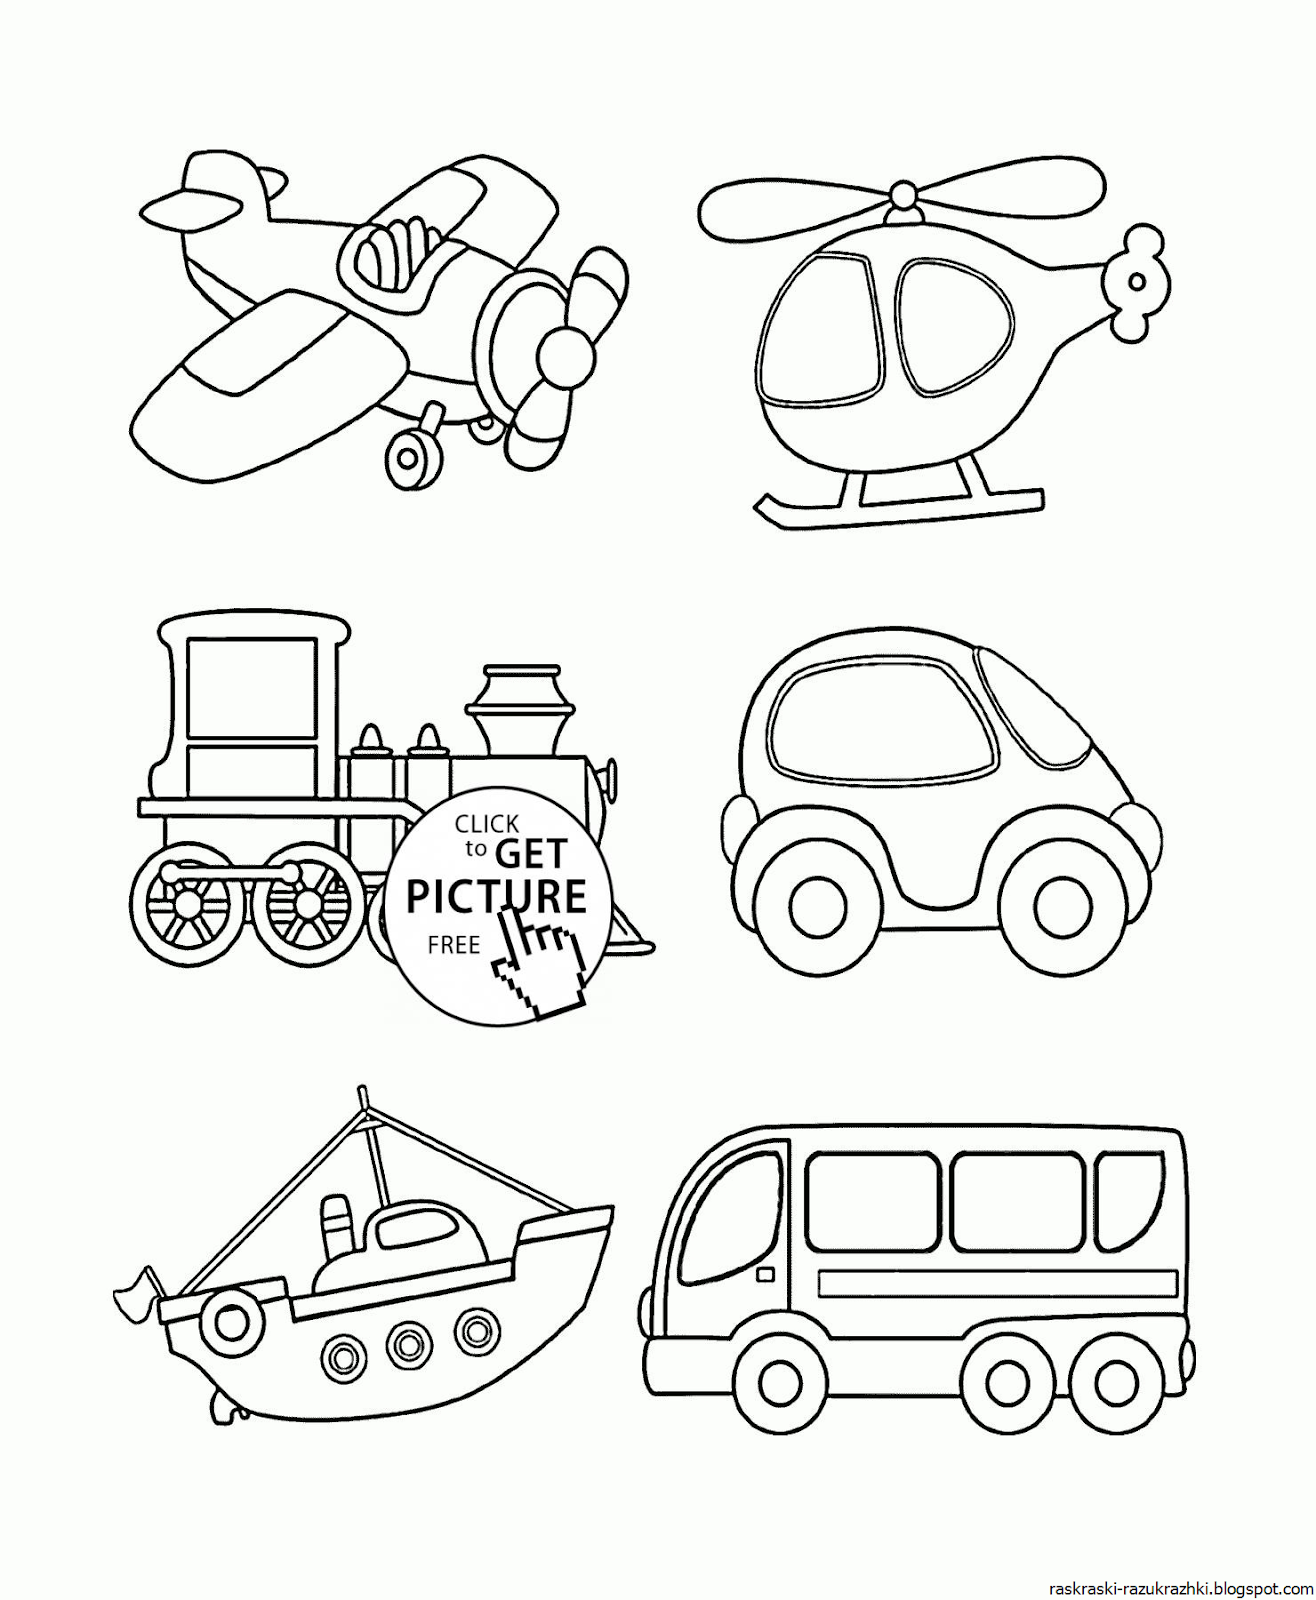 Раскраска виды транспорта для детей: Раскраски транспорта для детей